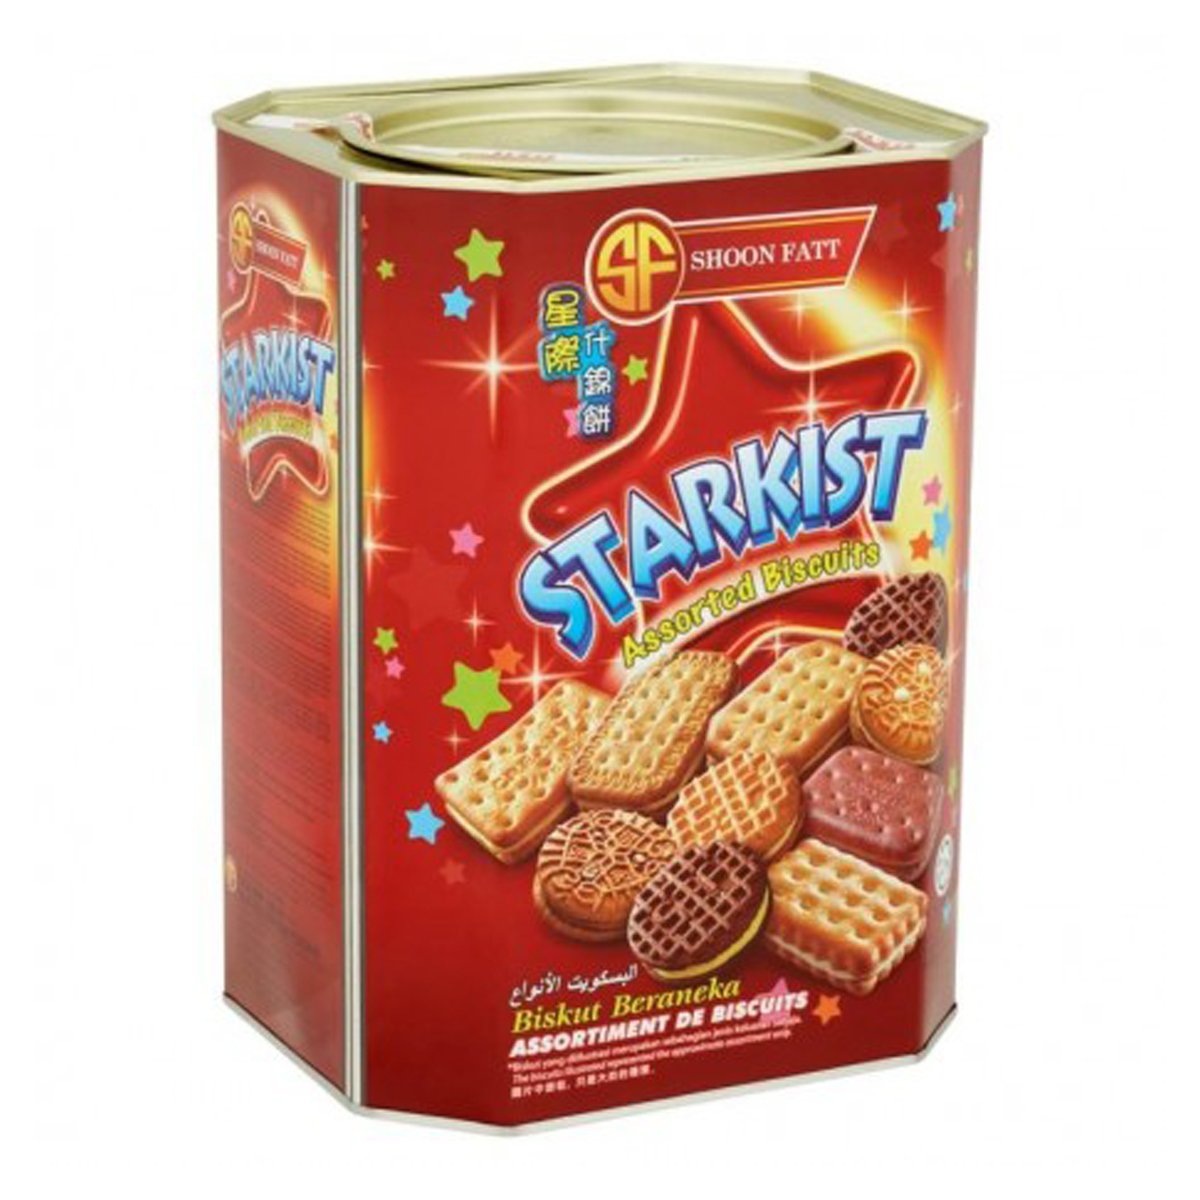 Shoon Fatt Starkist Assorted Biscuits 600g